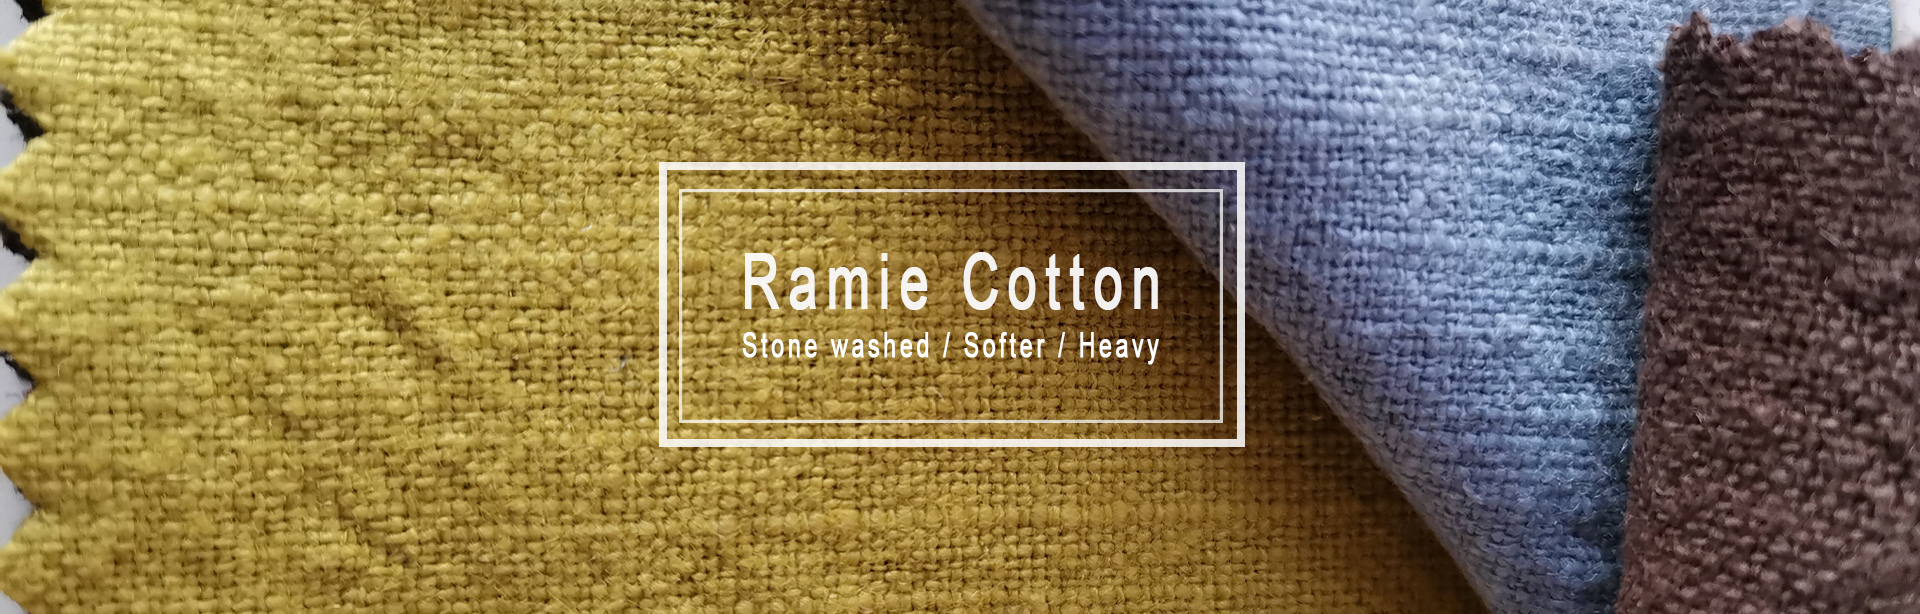 ramie cotton fabric